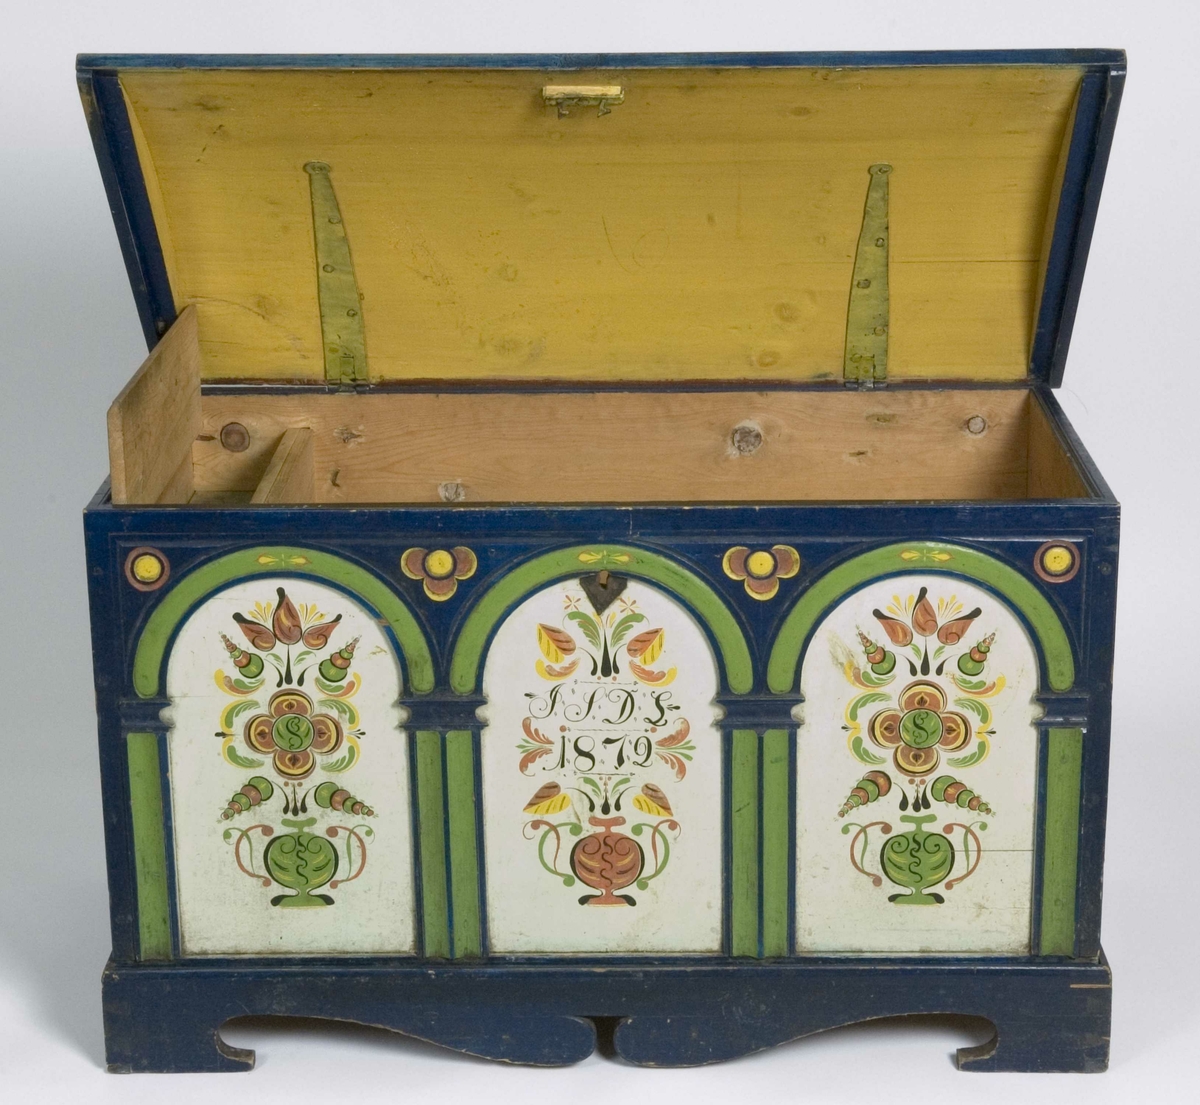 Kiste med buet lokk og fotstykke. Lokket er rosemalt og forsiden har tre buer med rosemalte fyllinger.